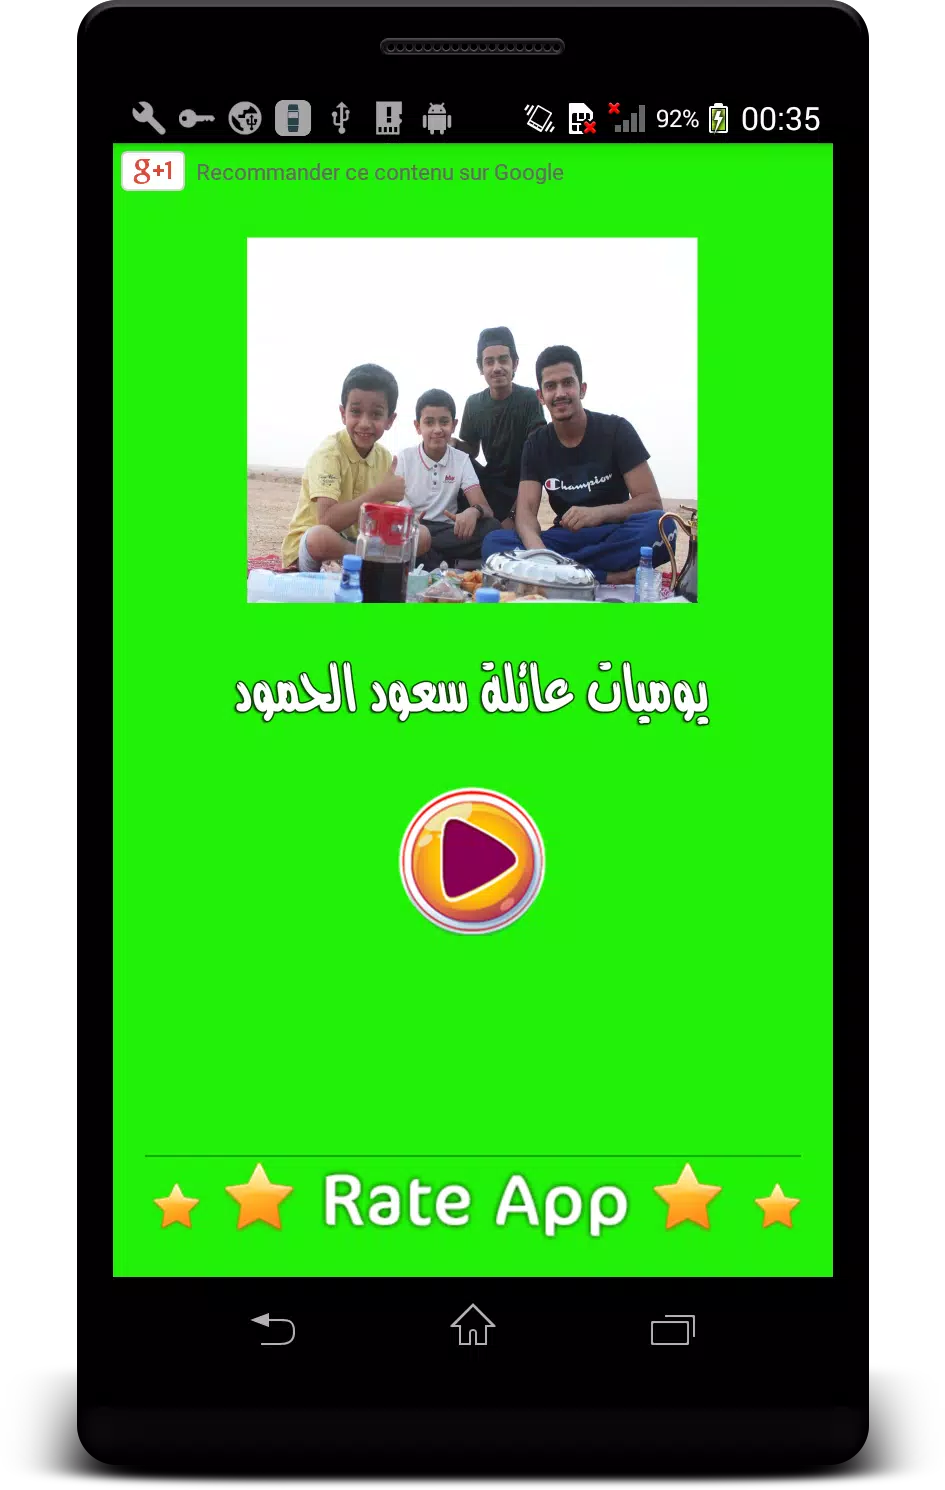 مستجدات عائلة سعود الحمود - فلوقات ( متجددة ) APK für Android herunterladen